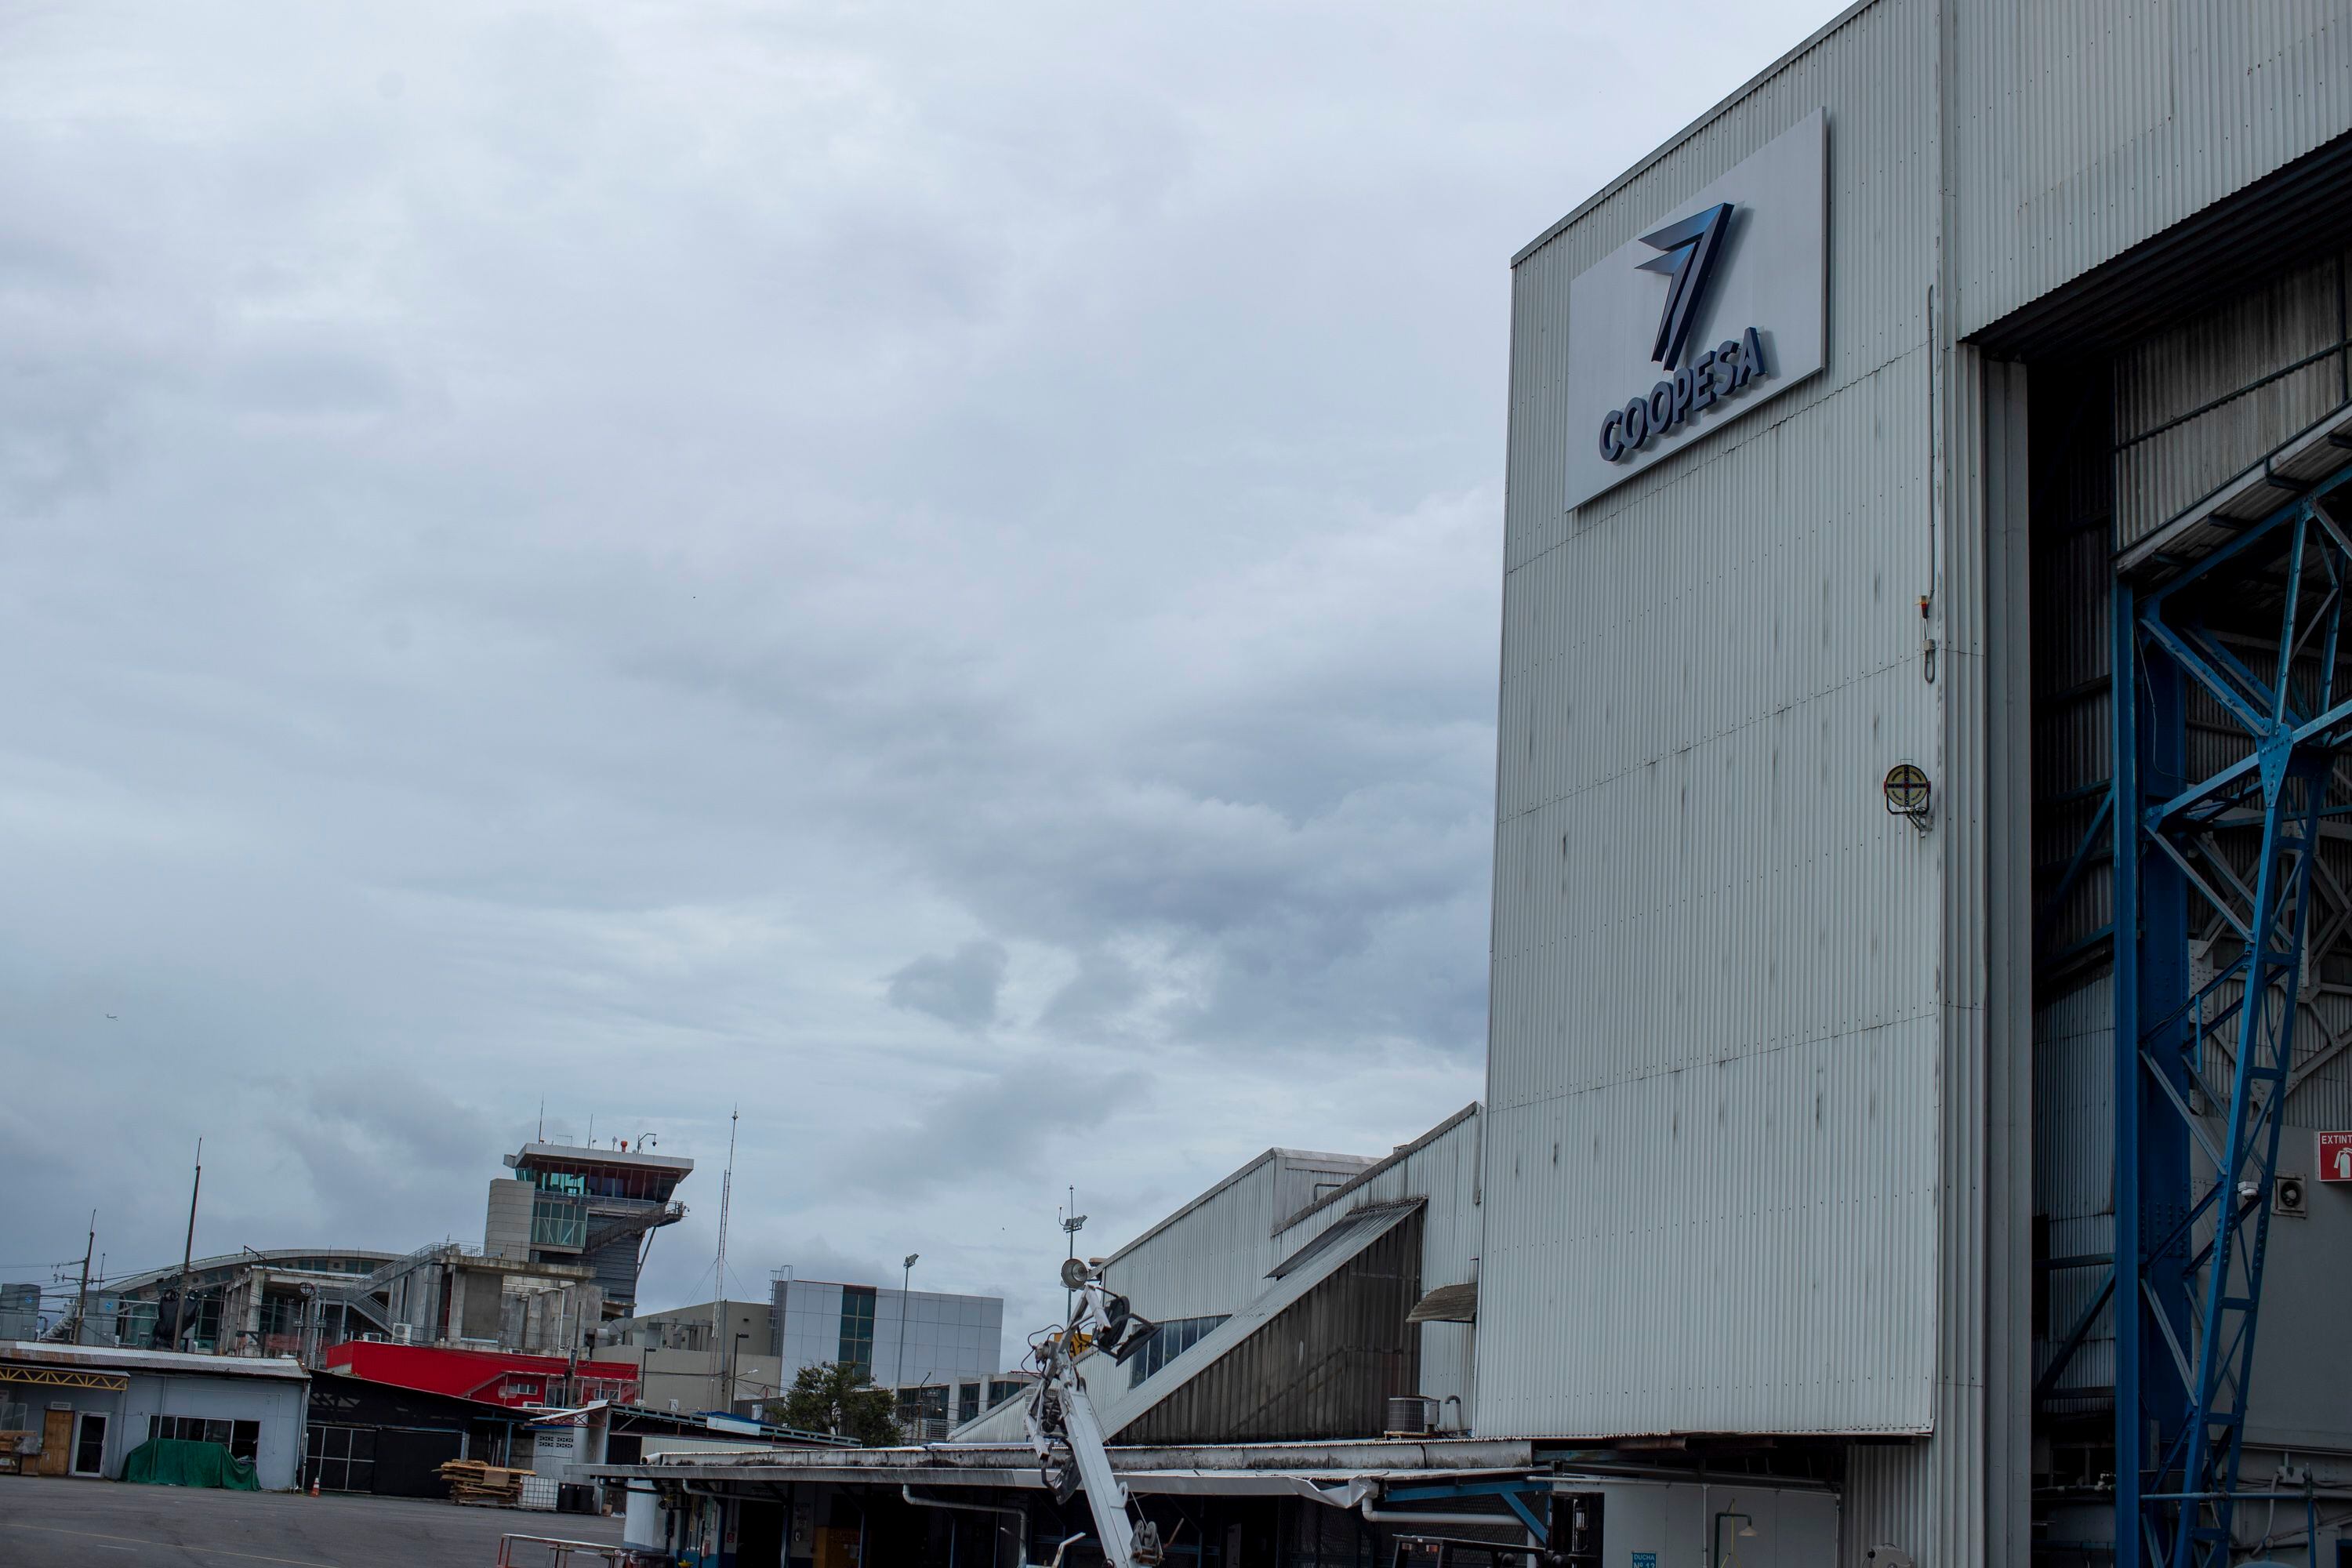 Coopesa fue fundada en 1963 y sus instalaciones incluyen, ahora, cuatro hangares con capacidad hasta para siete líneas de trabajo para aeronaves de carrocería estrecha. El personal también hace reparaciones estructurales en aviones con daños, ejecutan inspecciones, hacen renovación de interiores y otras labores de mantenimiento aeronáutico.